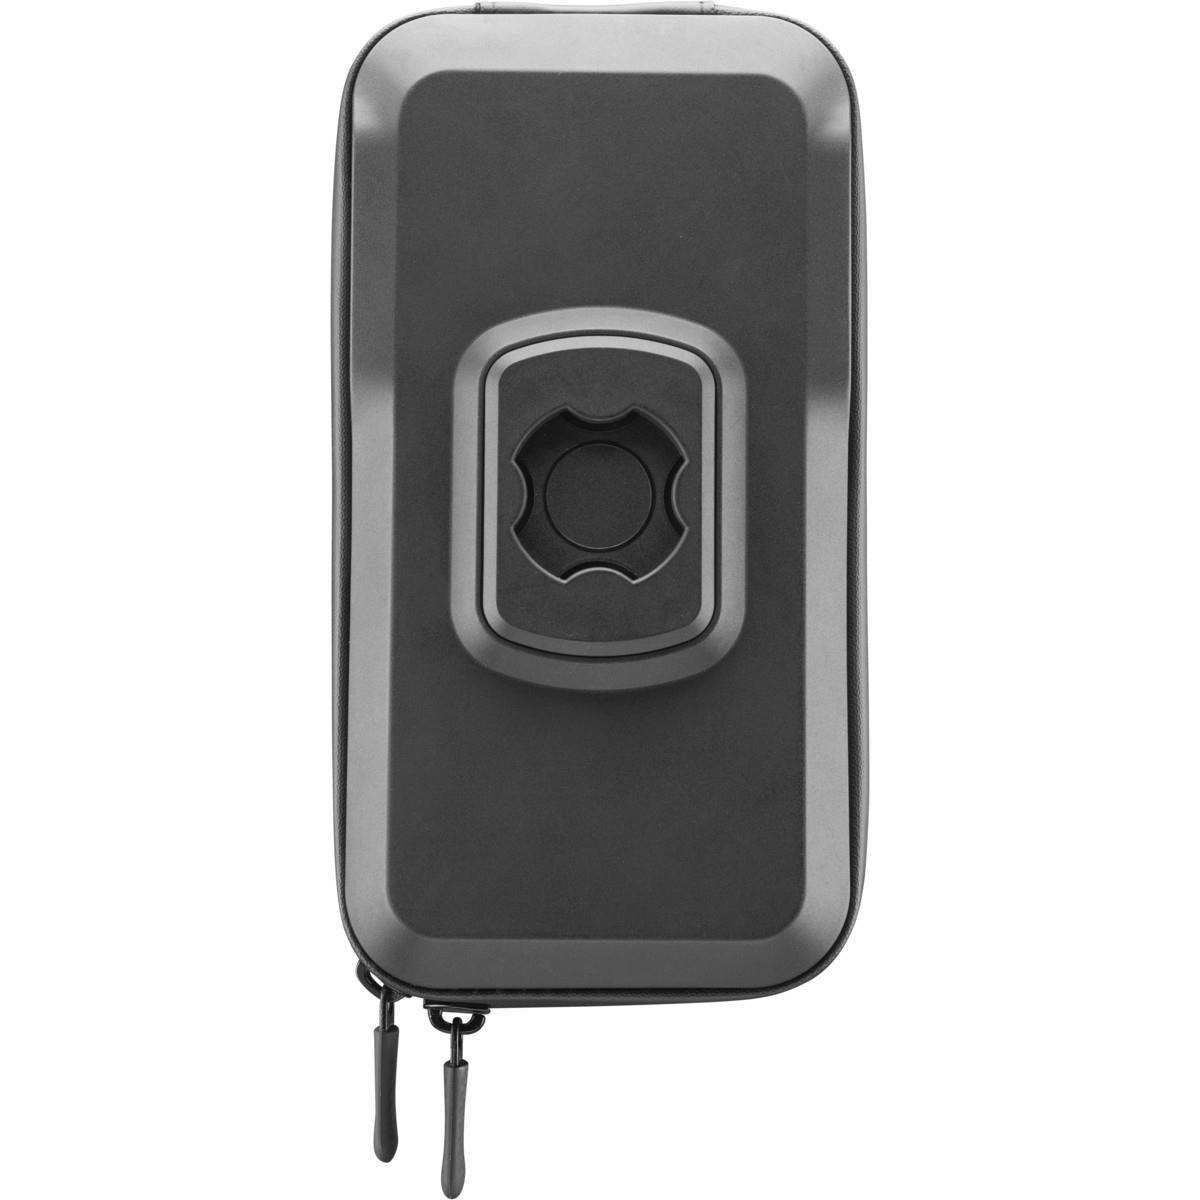 Quiklox Waterproof Case 7,0 Zoll für Motorradhalterung Smartphone